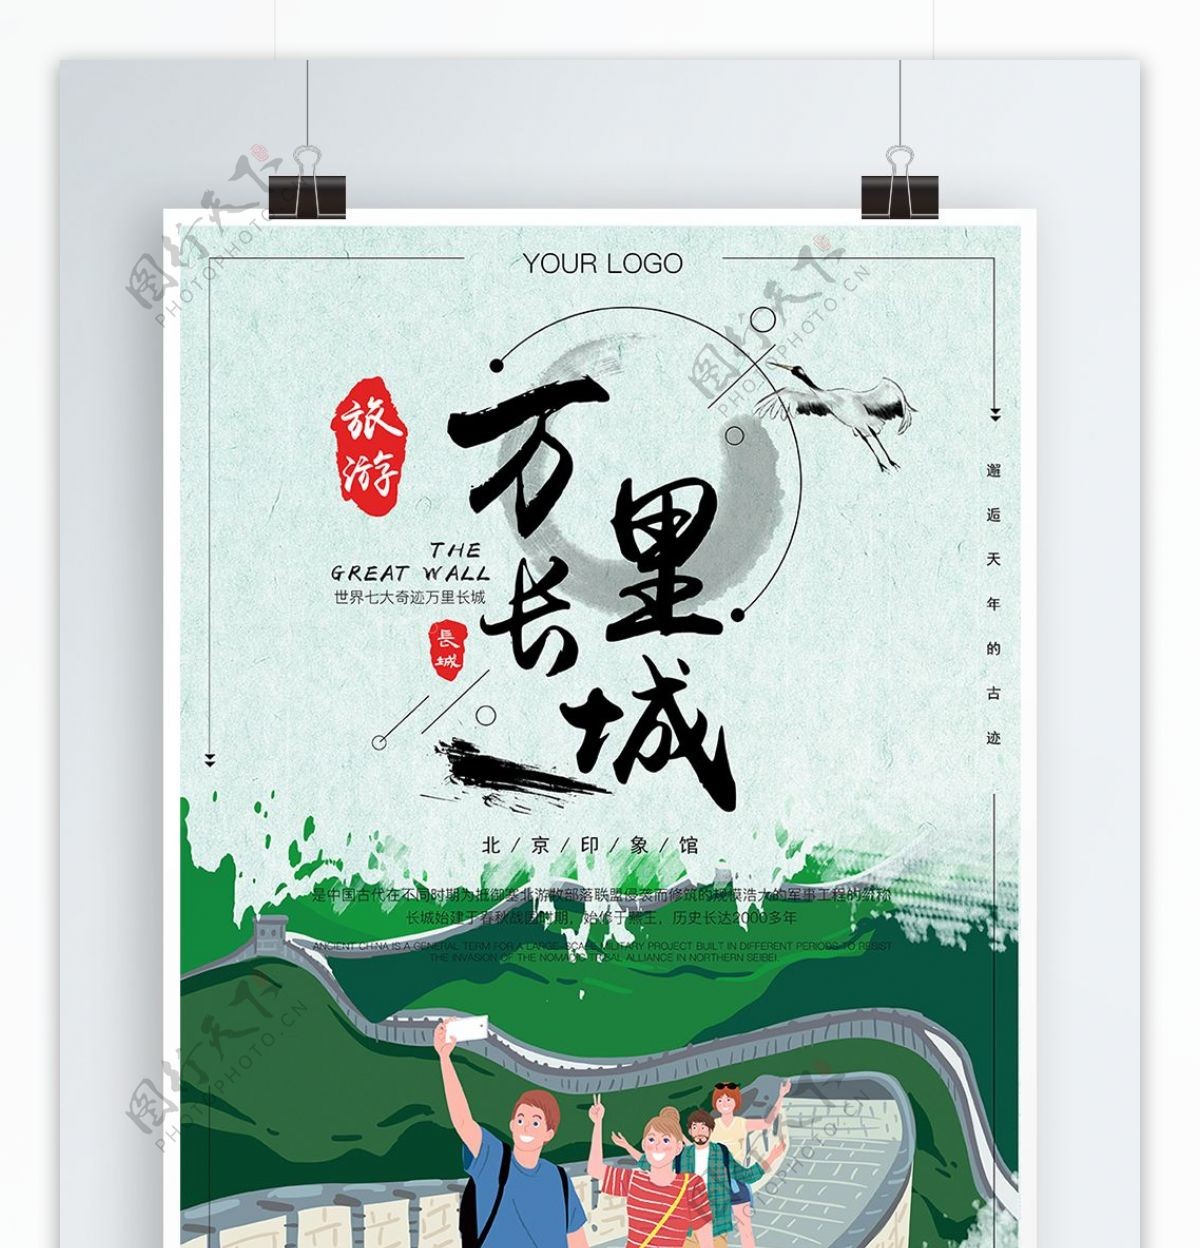 原创手绘万里长城北京旅游插画海报